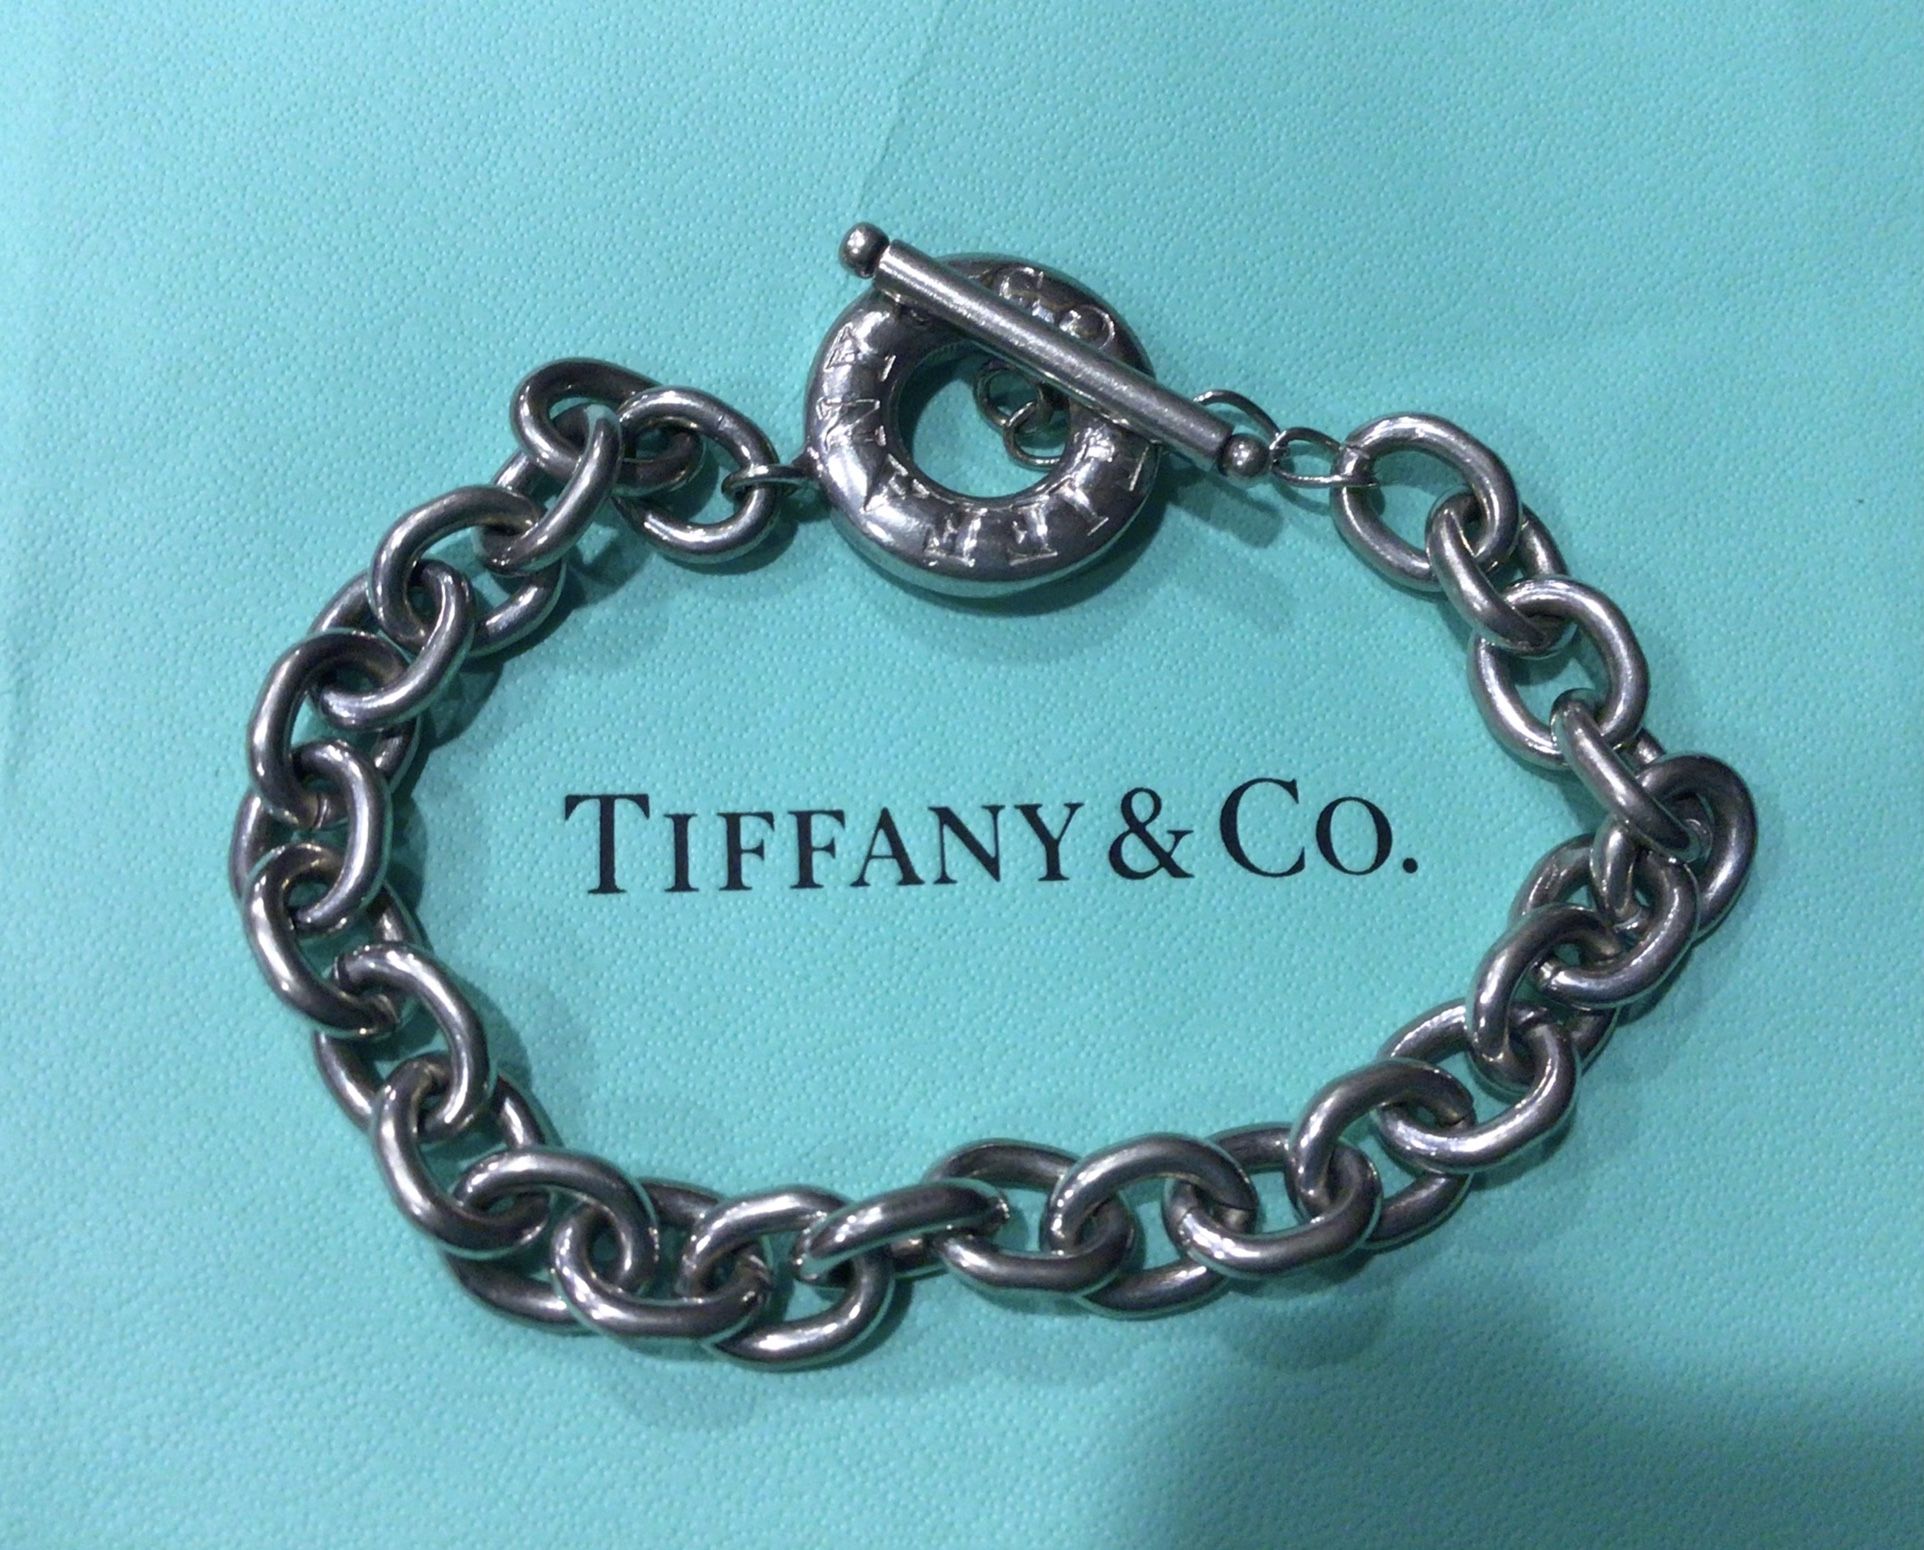 Tiffany & Co. Silver Toggle Bracelet 